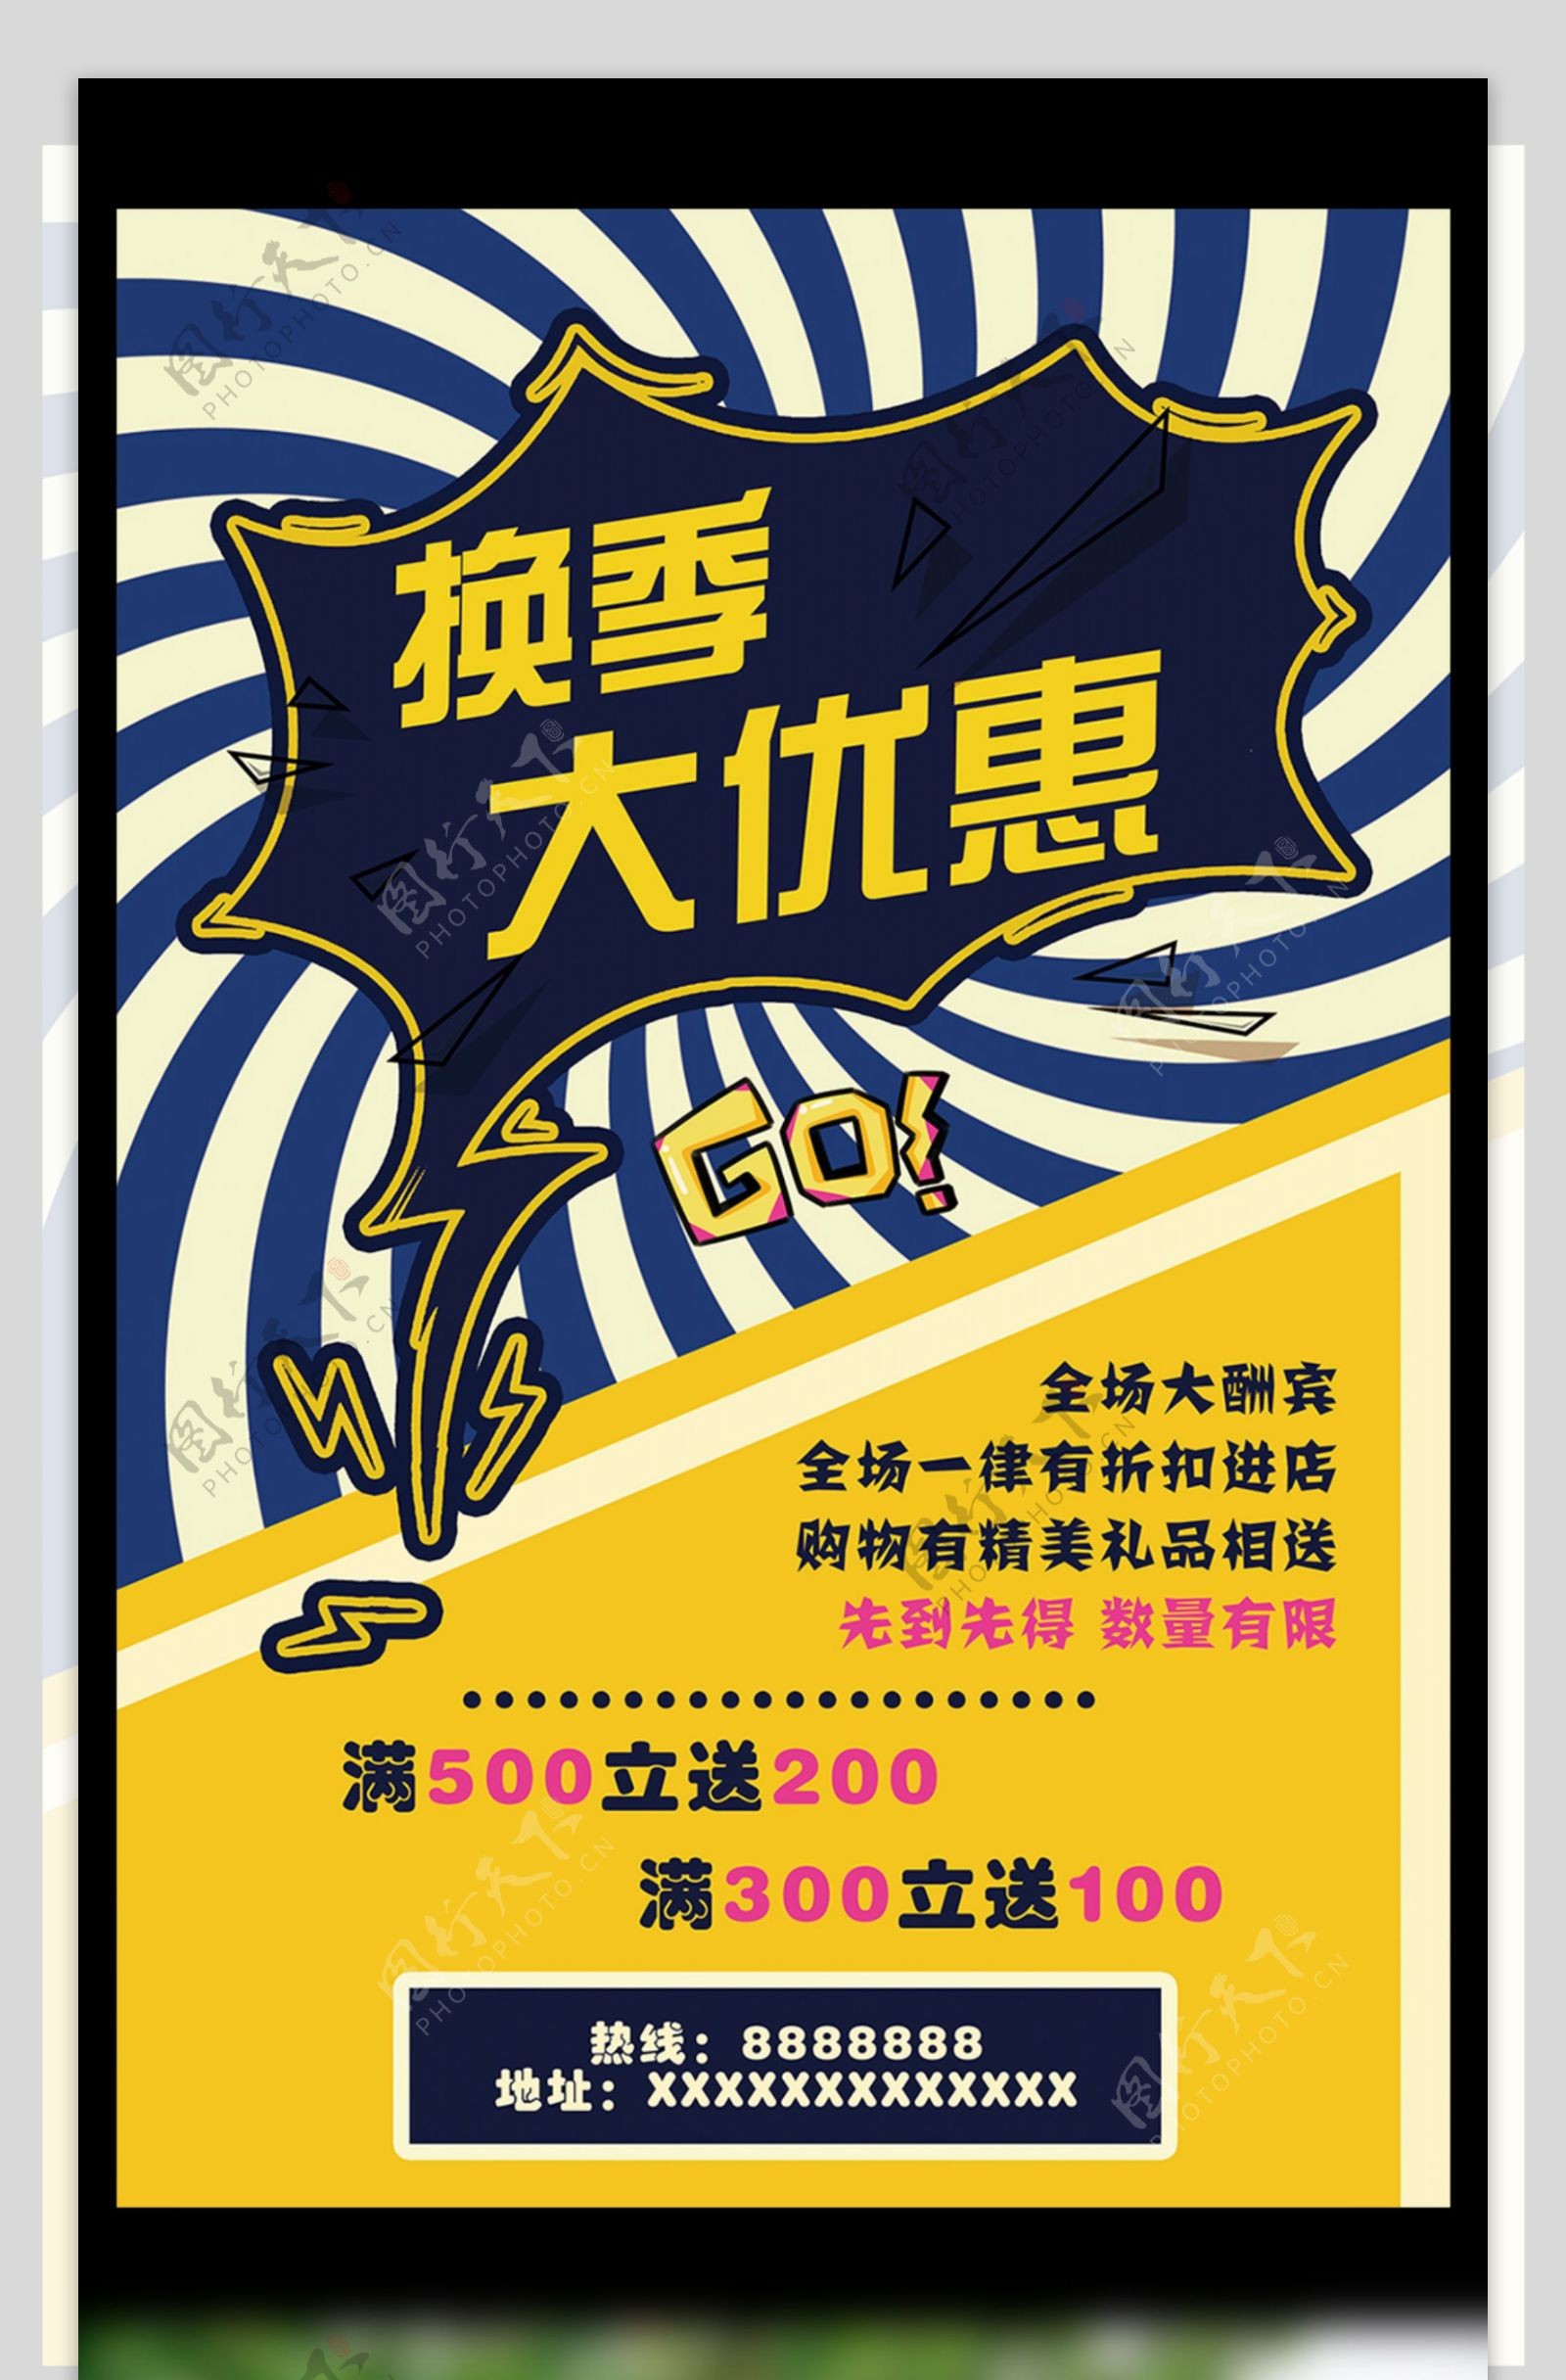 酷炫蓝黄换季大优惠宣传海报设计